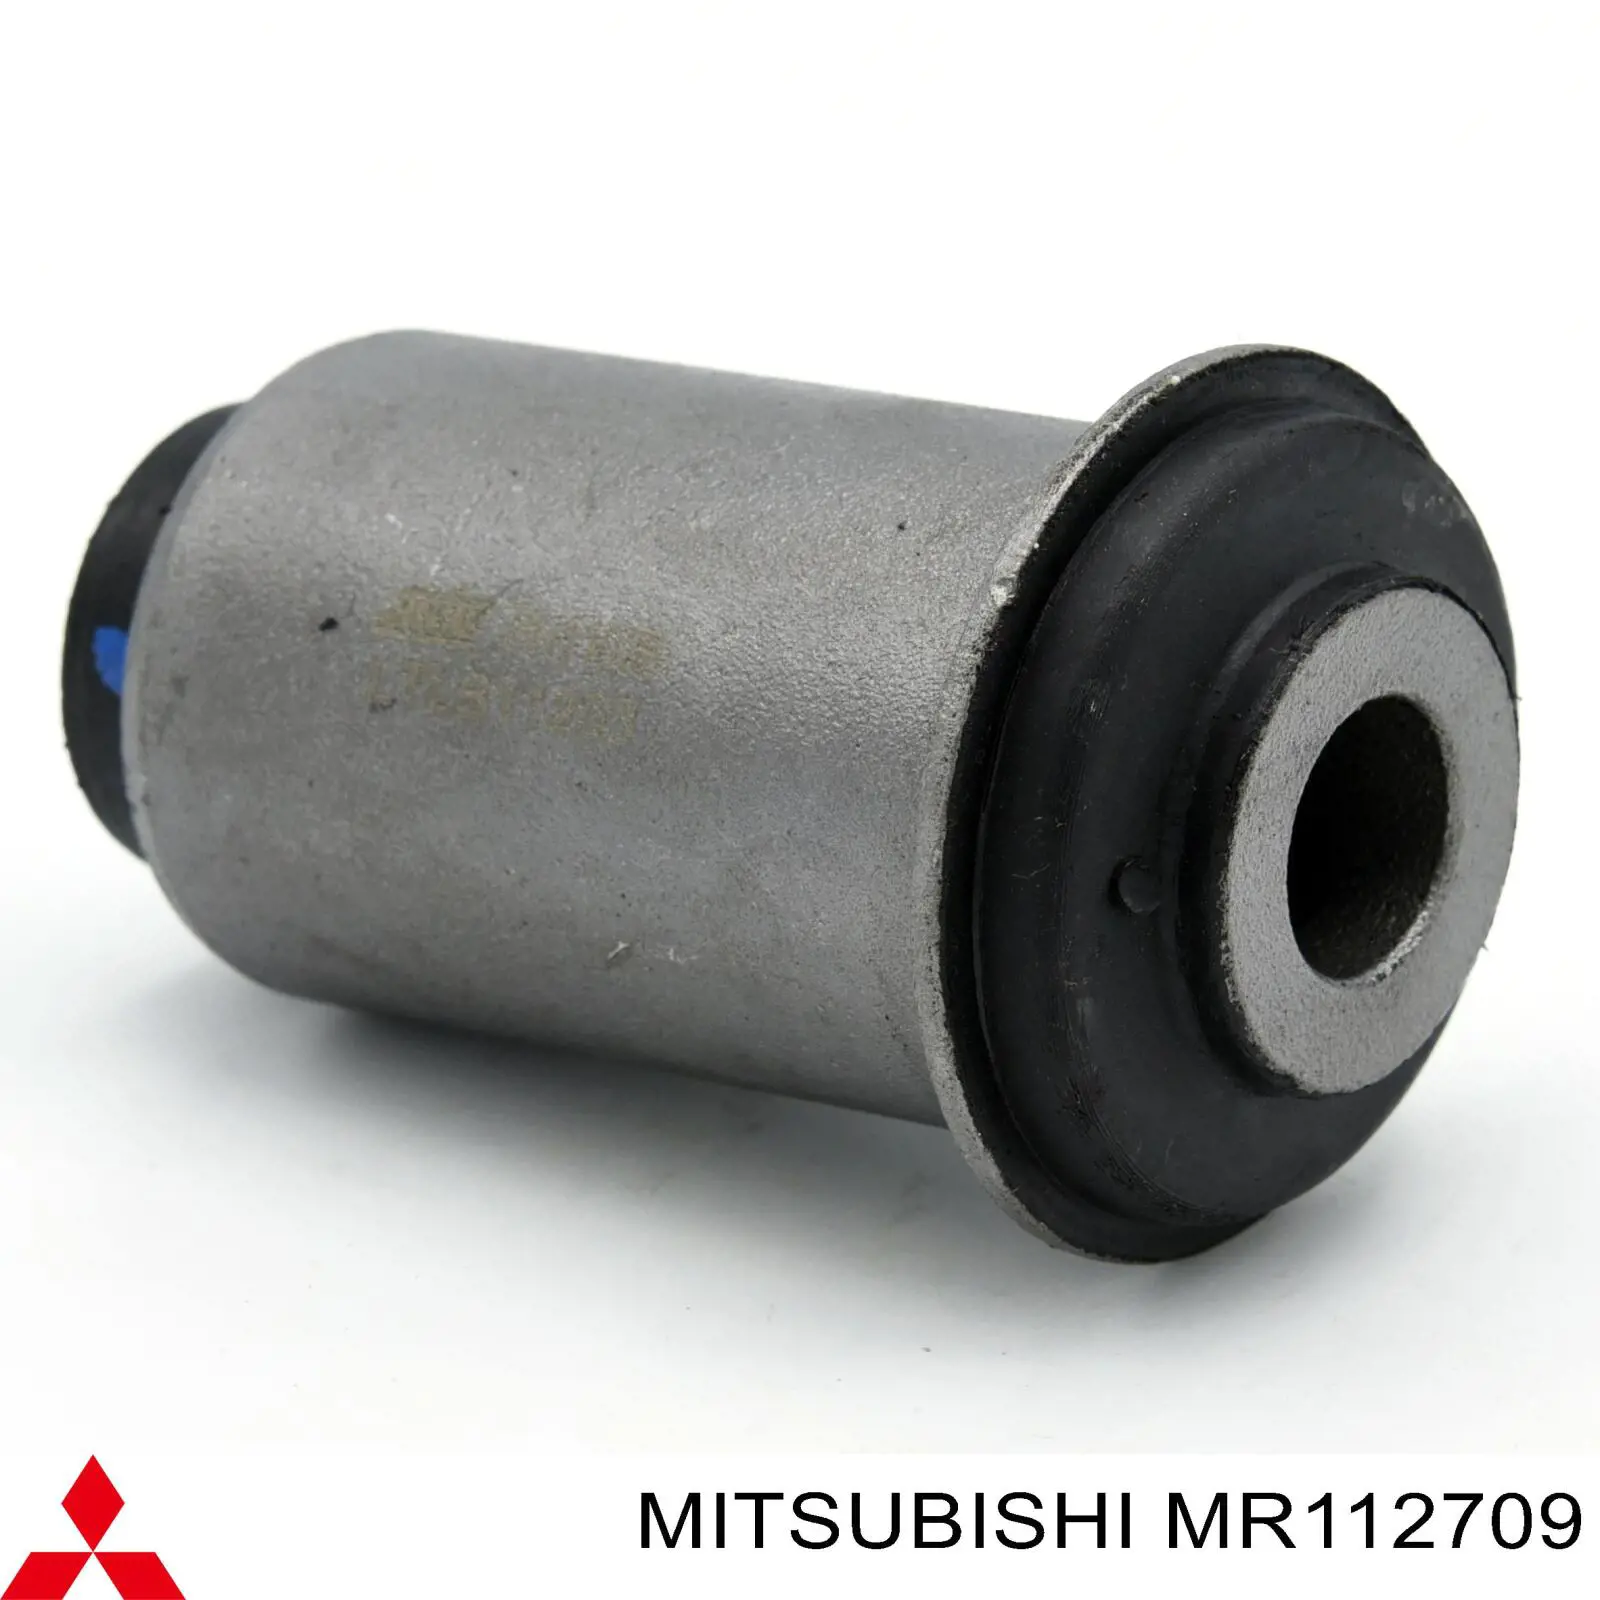 MR112709 Mitsubishi silentblock de suspensión delantero inferior